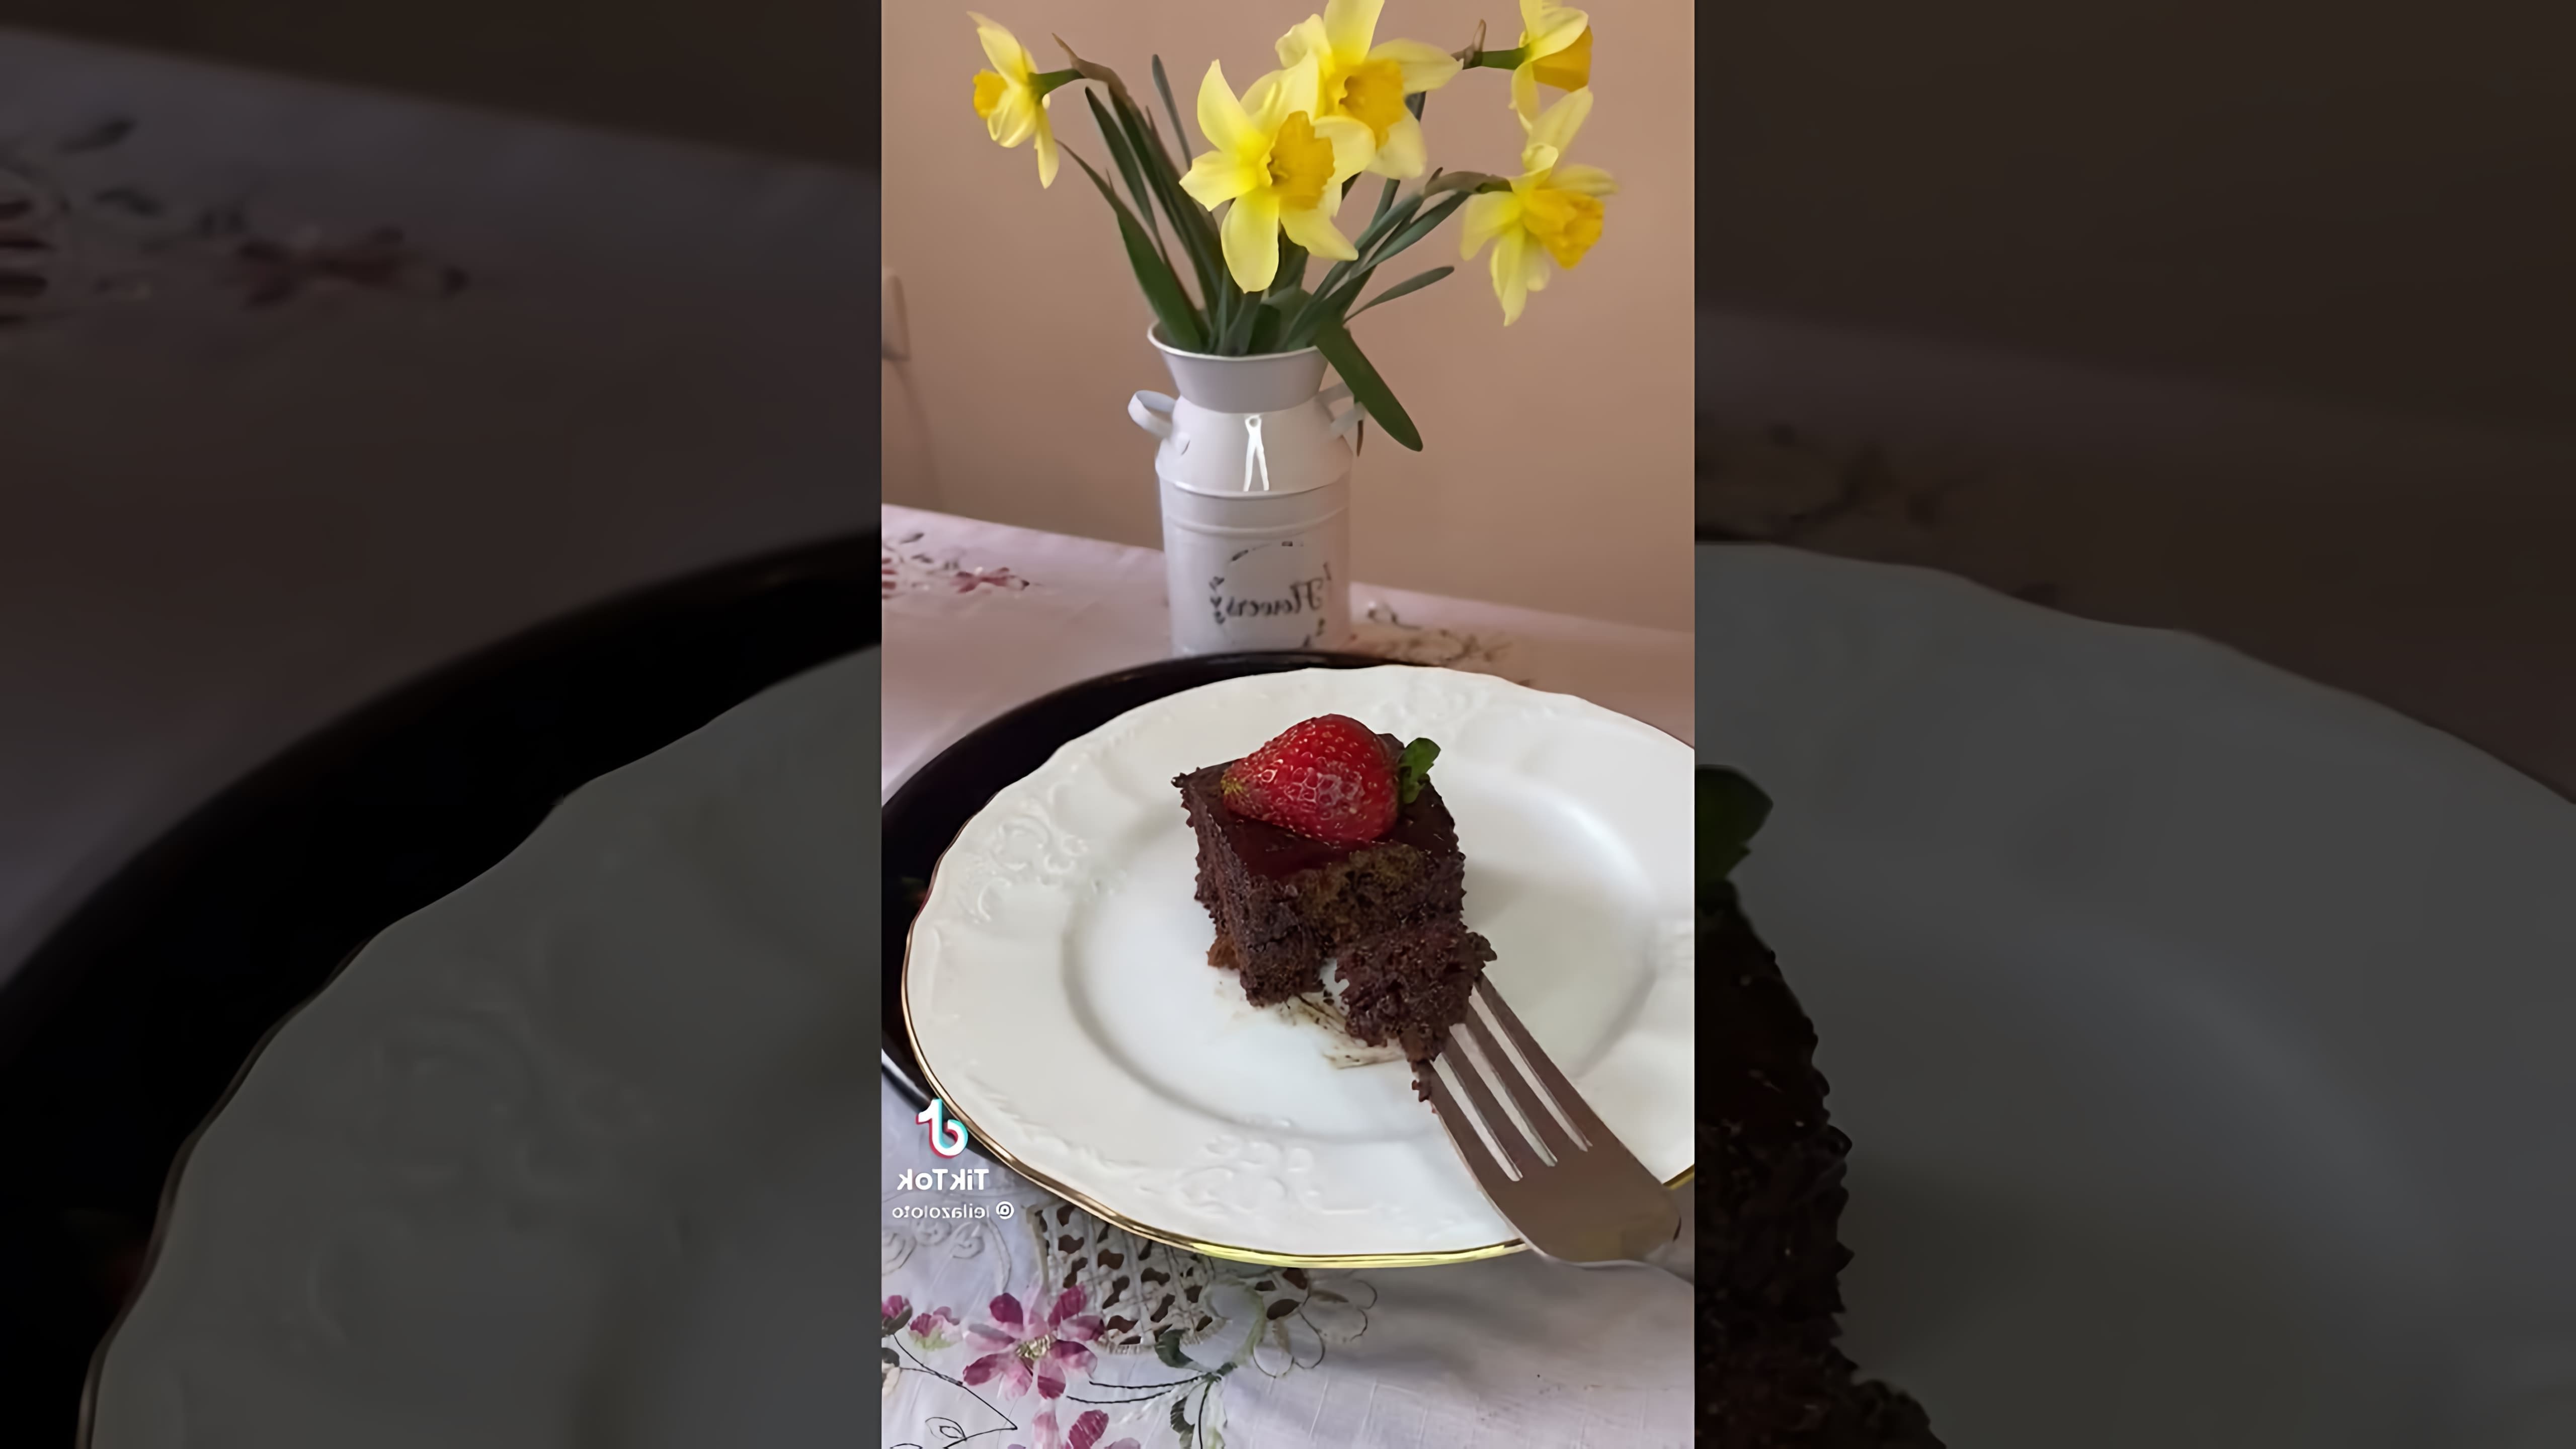 В этом видео демонстрируется рецепт приготовления турецкого кекса с шоколадным соусом